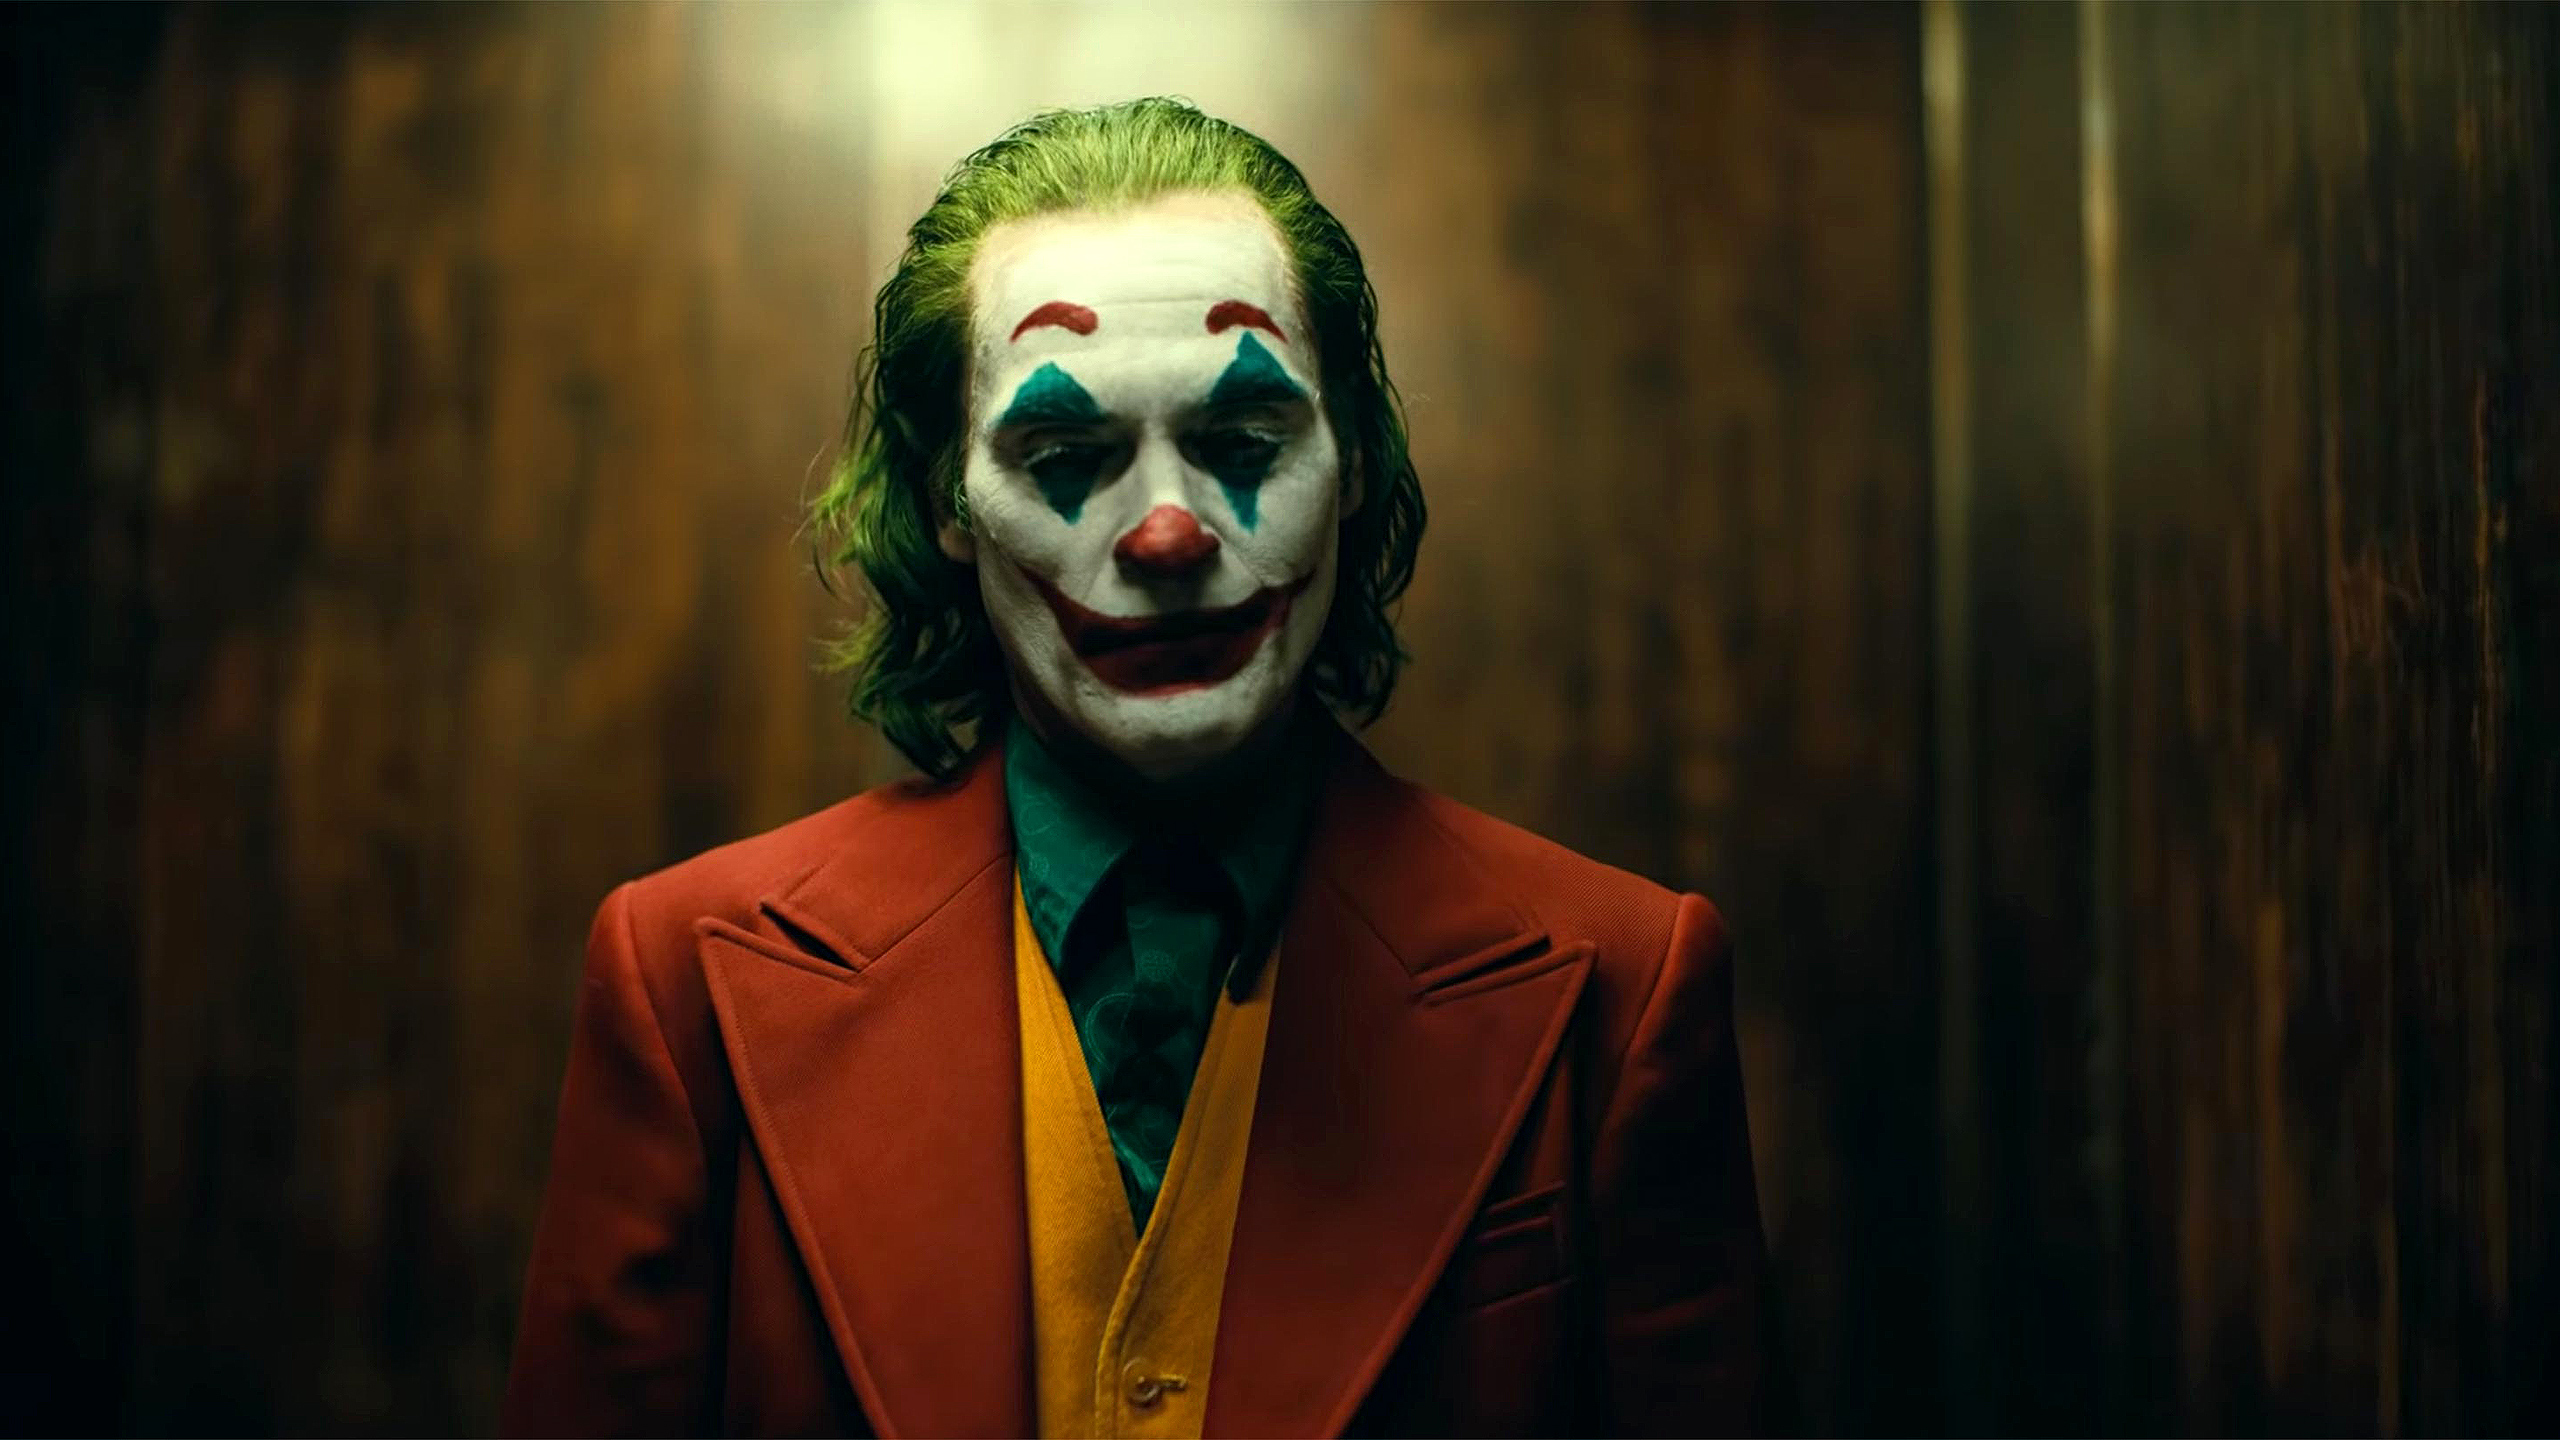 Joker (2019) poster.